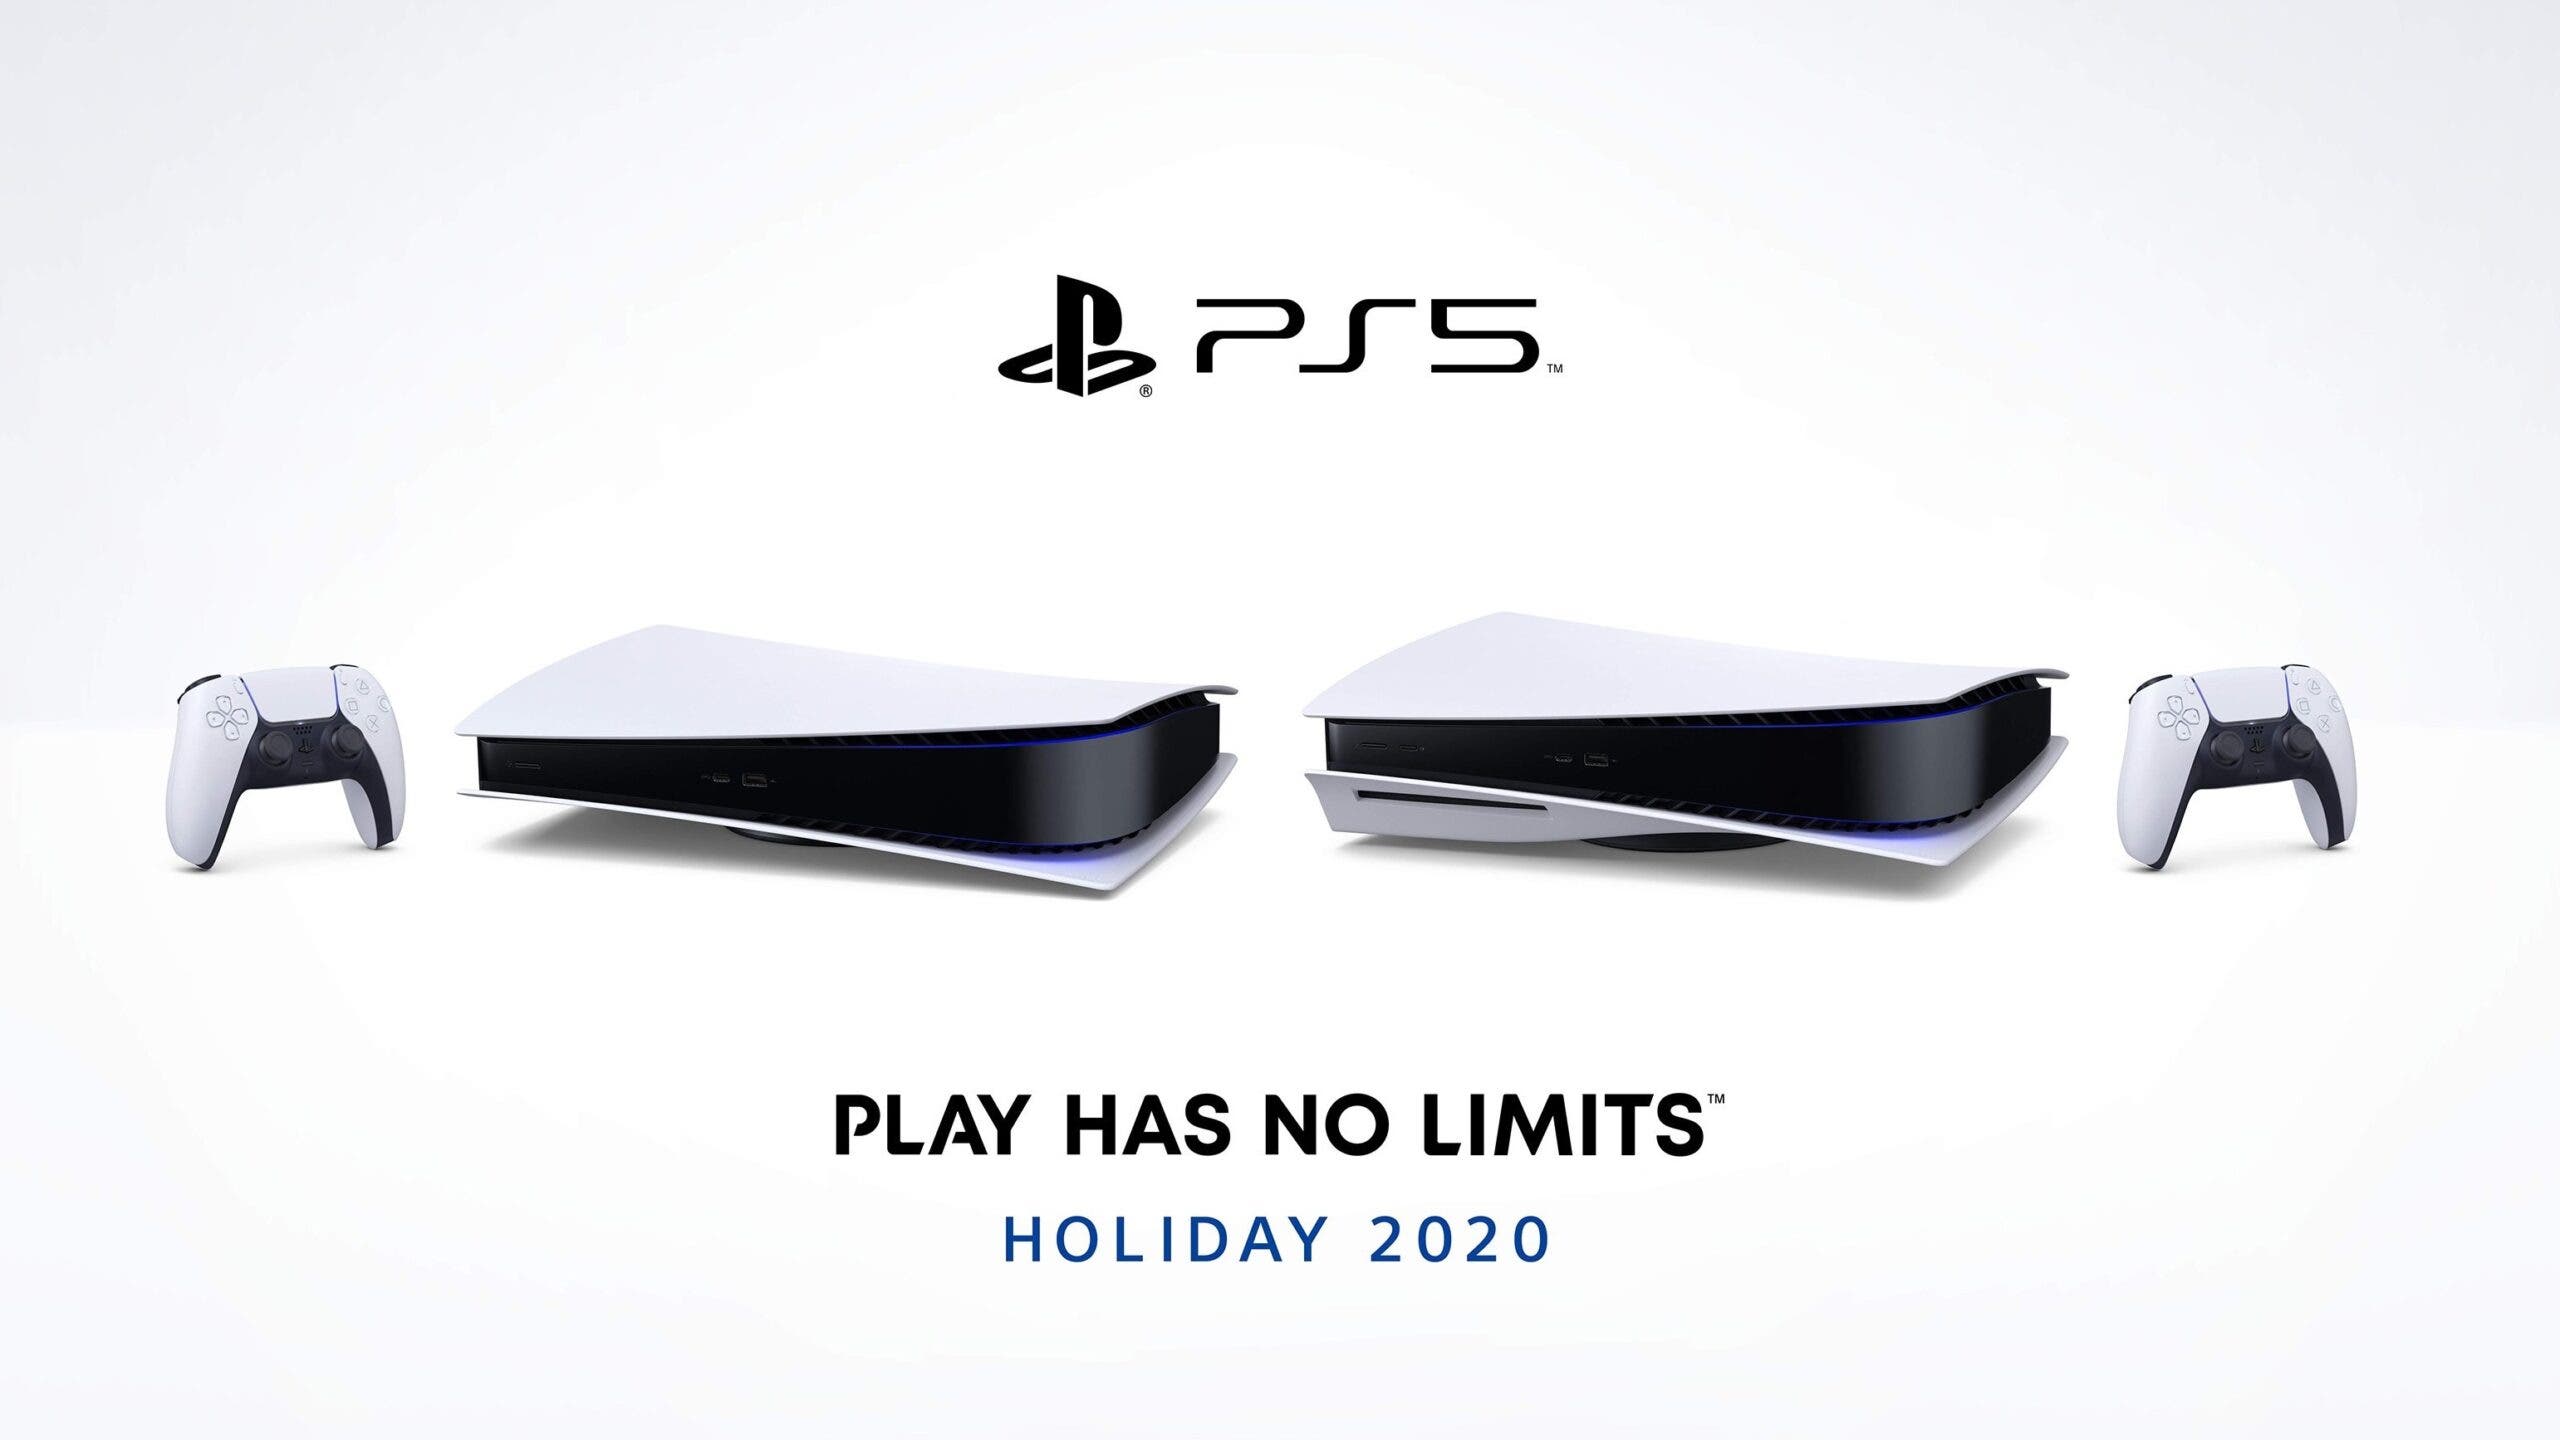 Entérate: Consola de PlayStation 5 sólo podrá comprarse por invitación